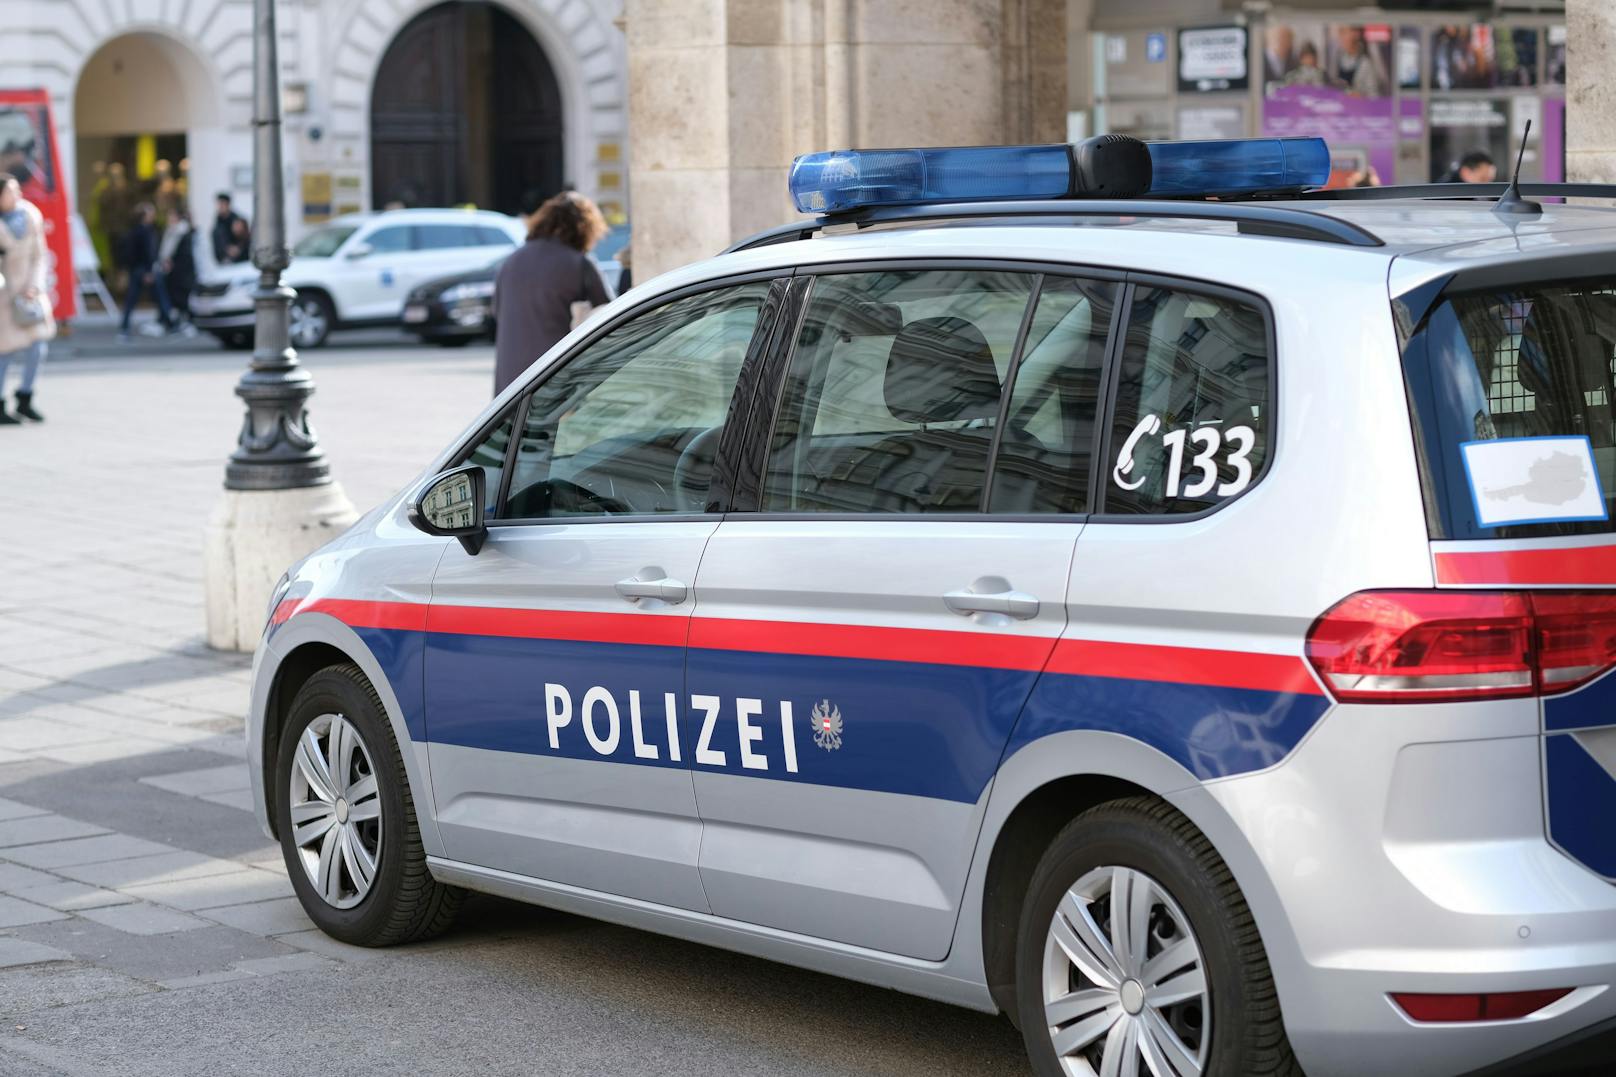 Polizei stoppt Auto – sofort klickten die Handschellen